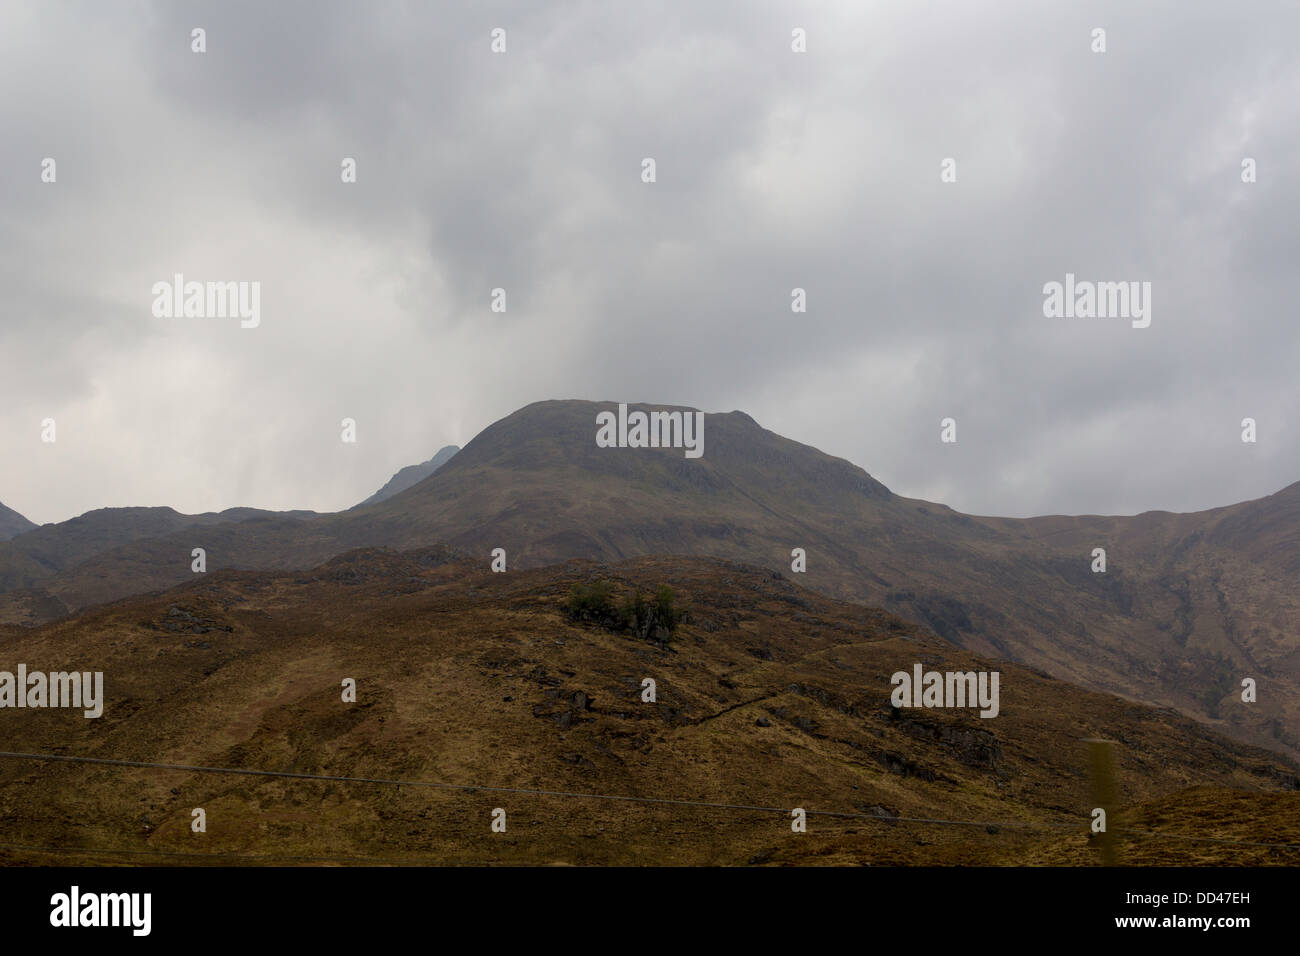 La pente douce d'une colline dans les Highlands écossais sur la rive d'un lac, à frotter partout et un ciel nuageux Banque D'Images